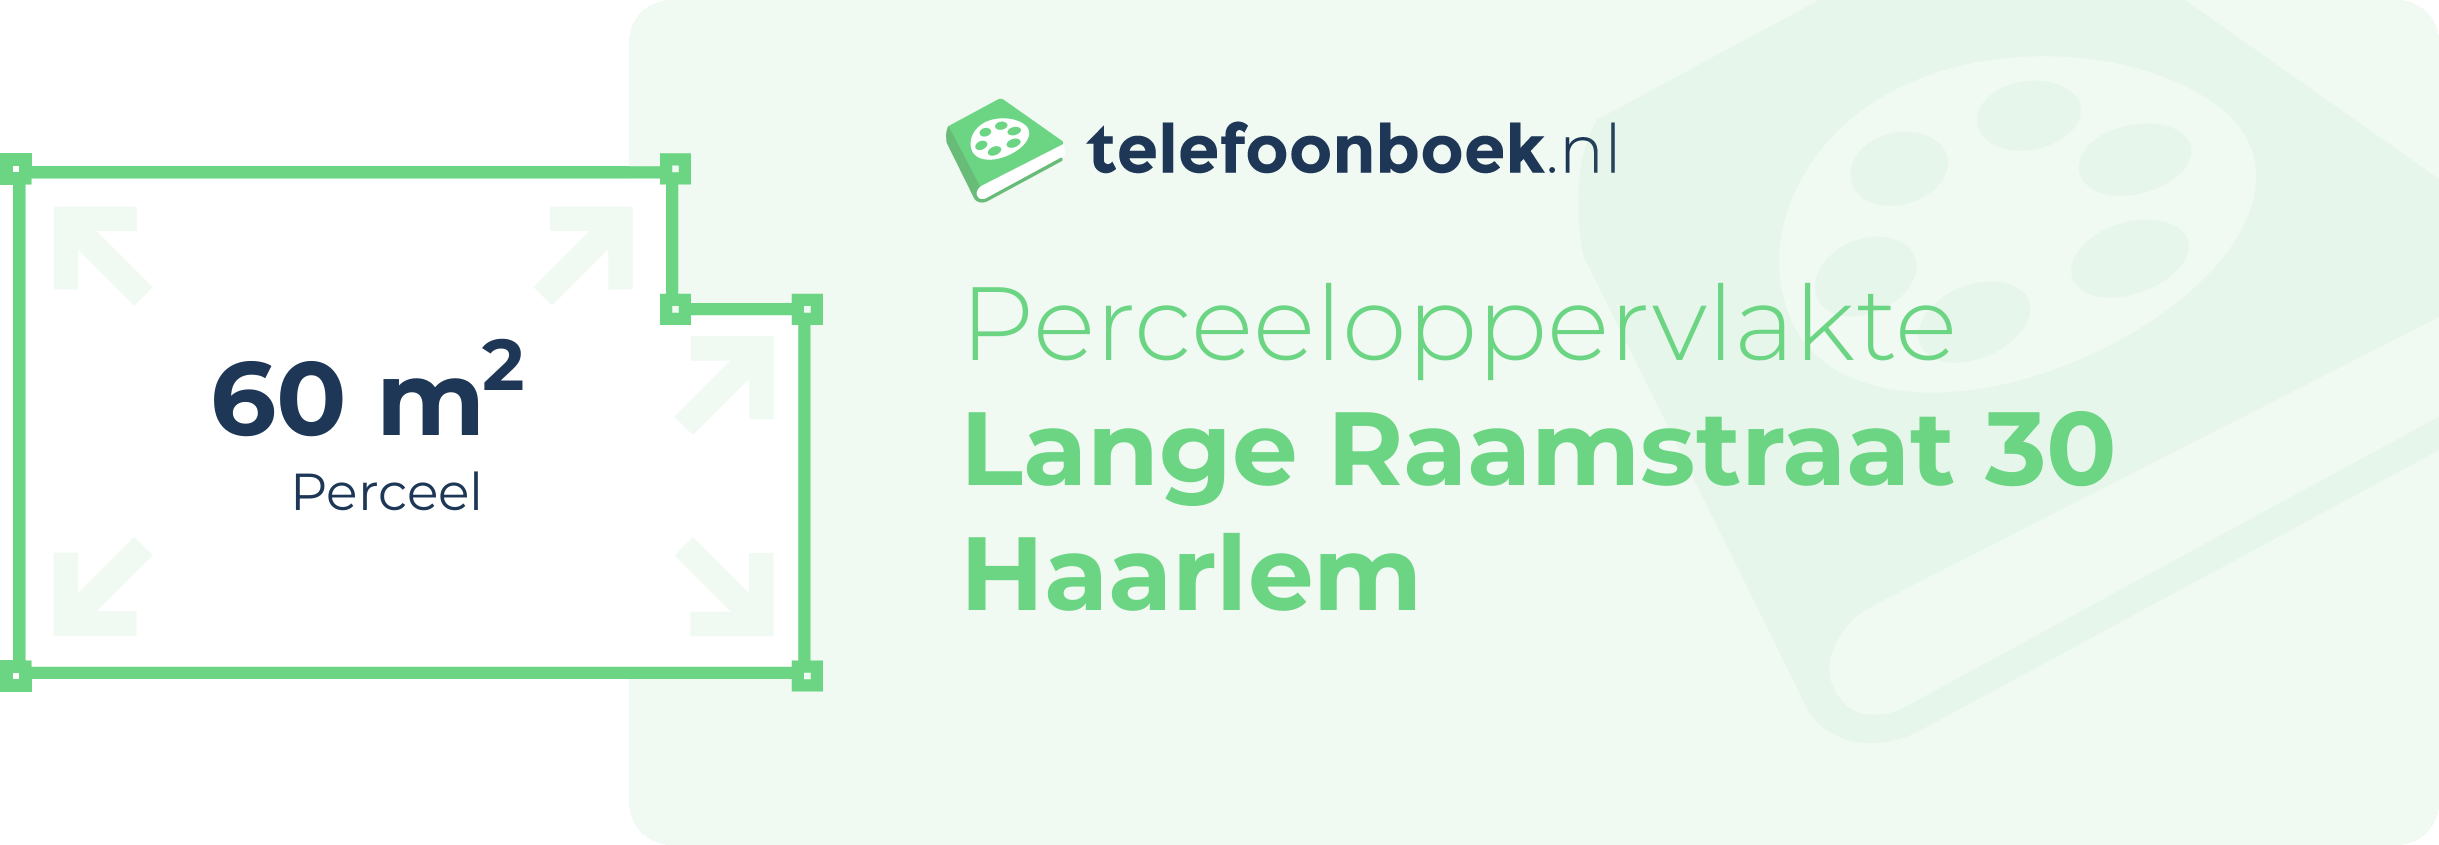 Perceeloppervlakte Lange Raamstraat 30 Haarlem